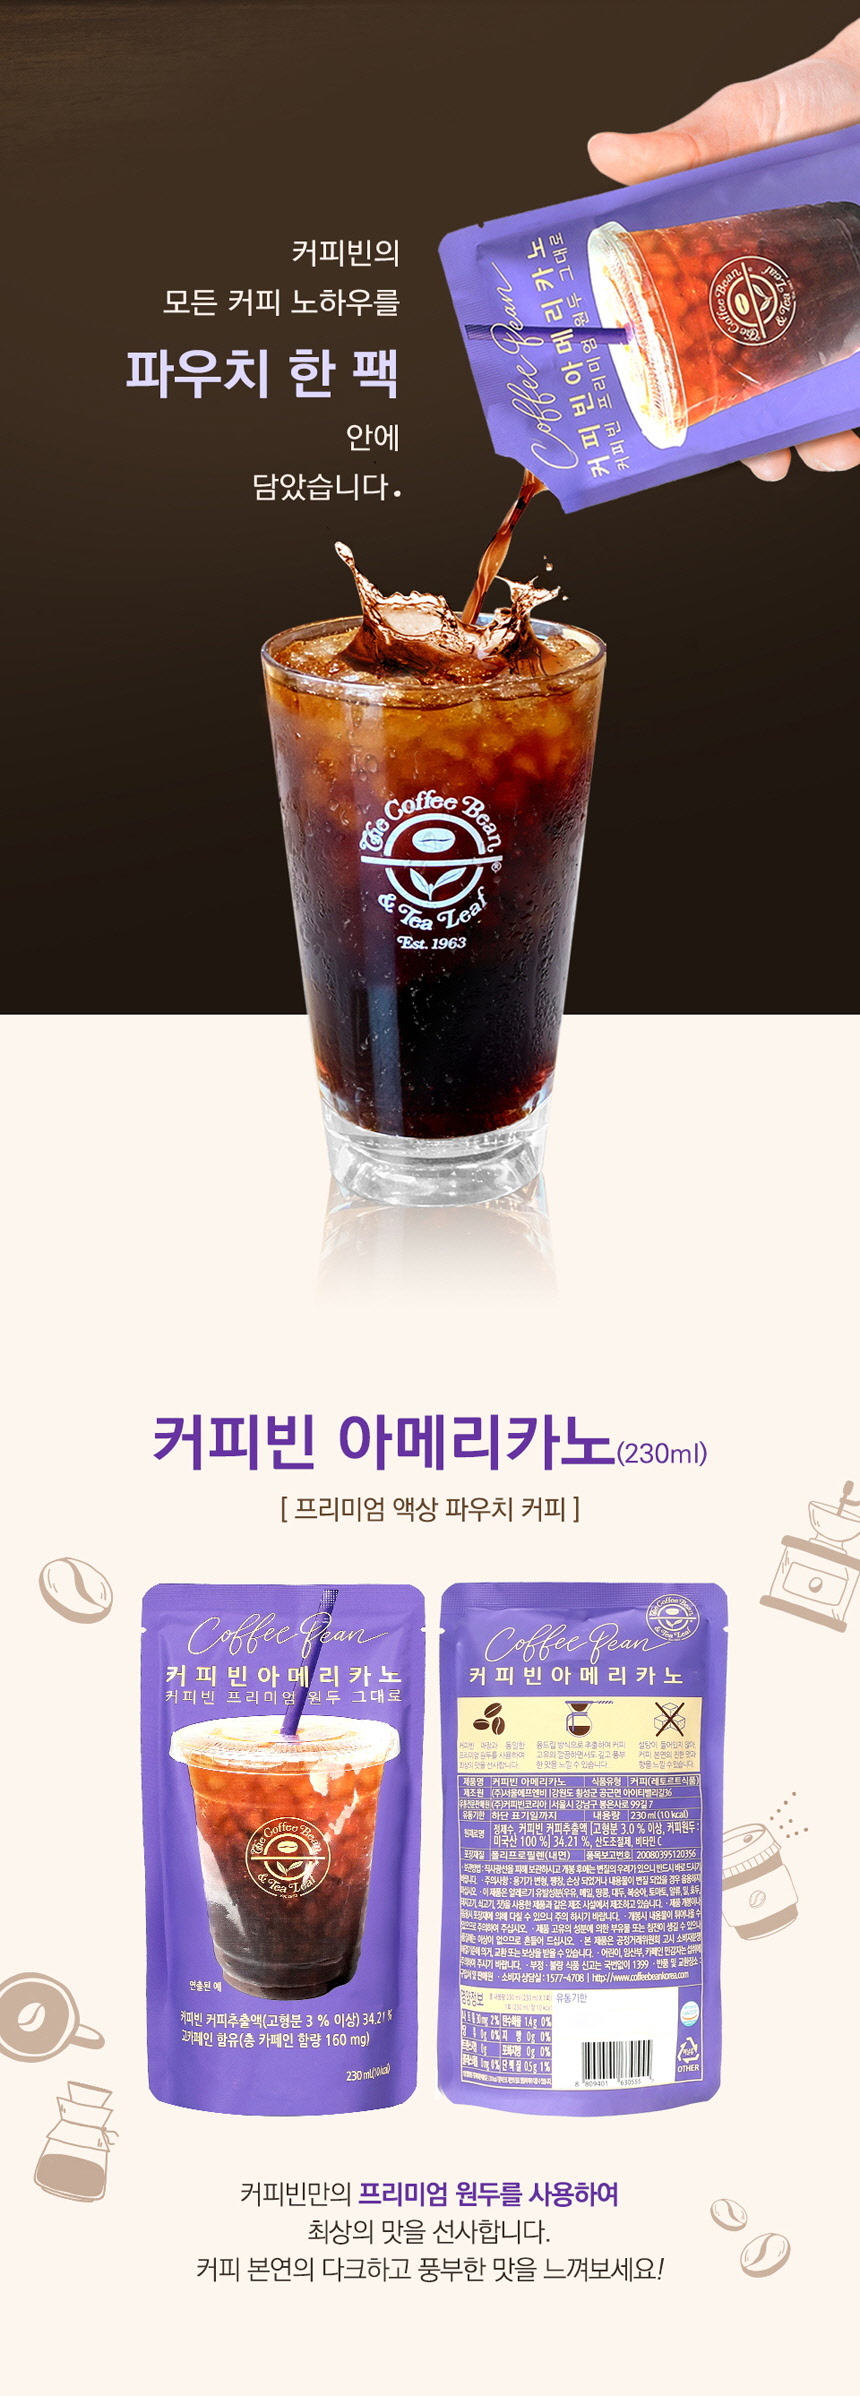 韓國食品-[커피빈] 아메리카노 230ml